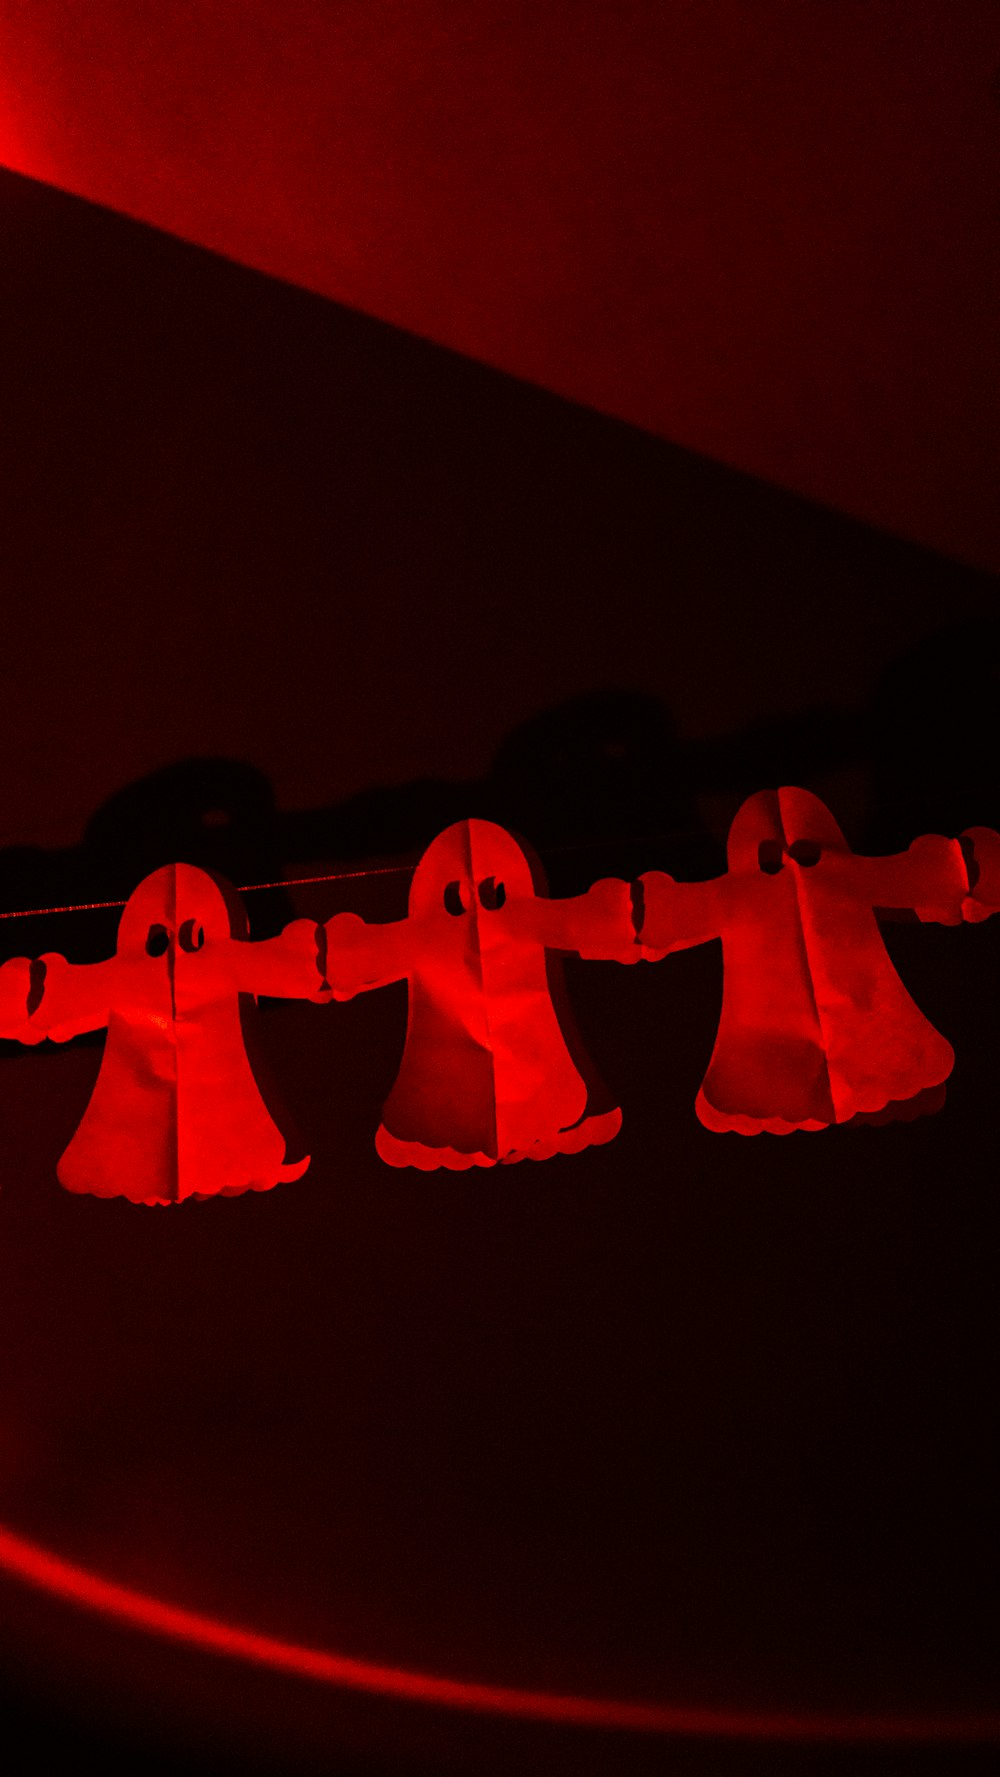 eine Gruppe von Glocken, die an einem roten Licht hängen